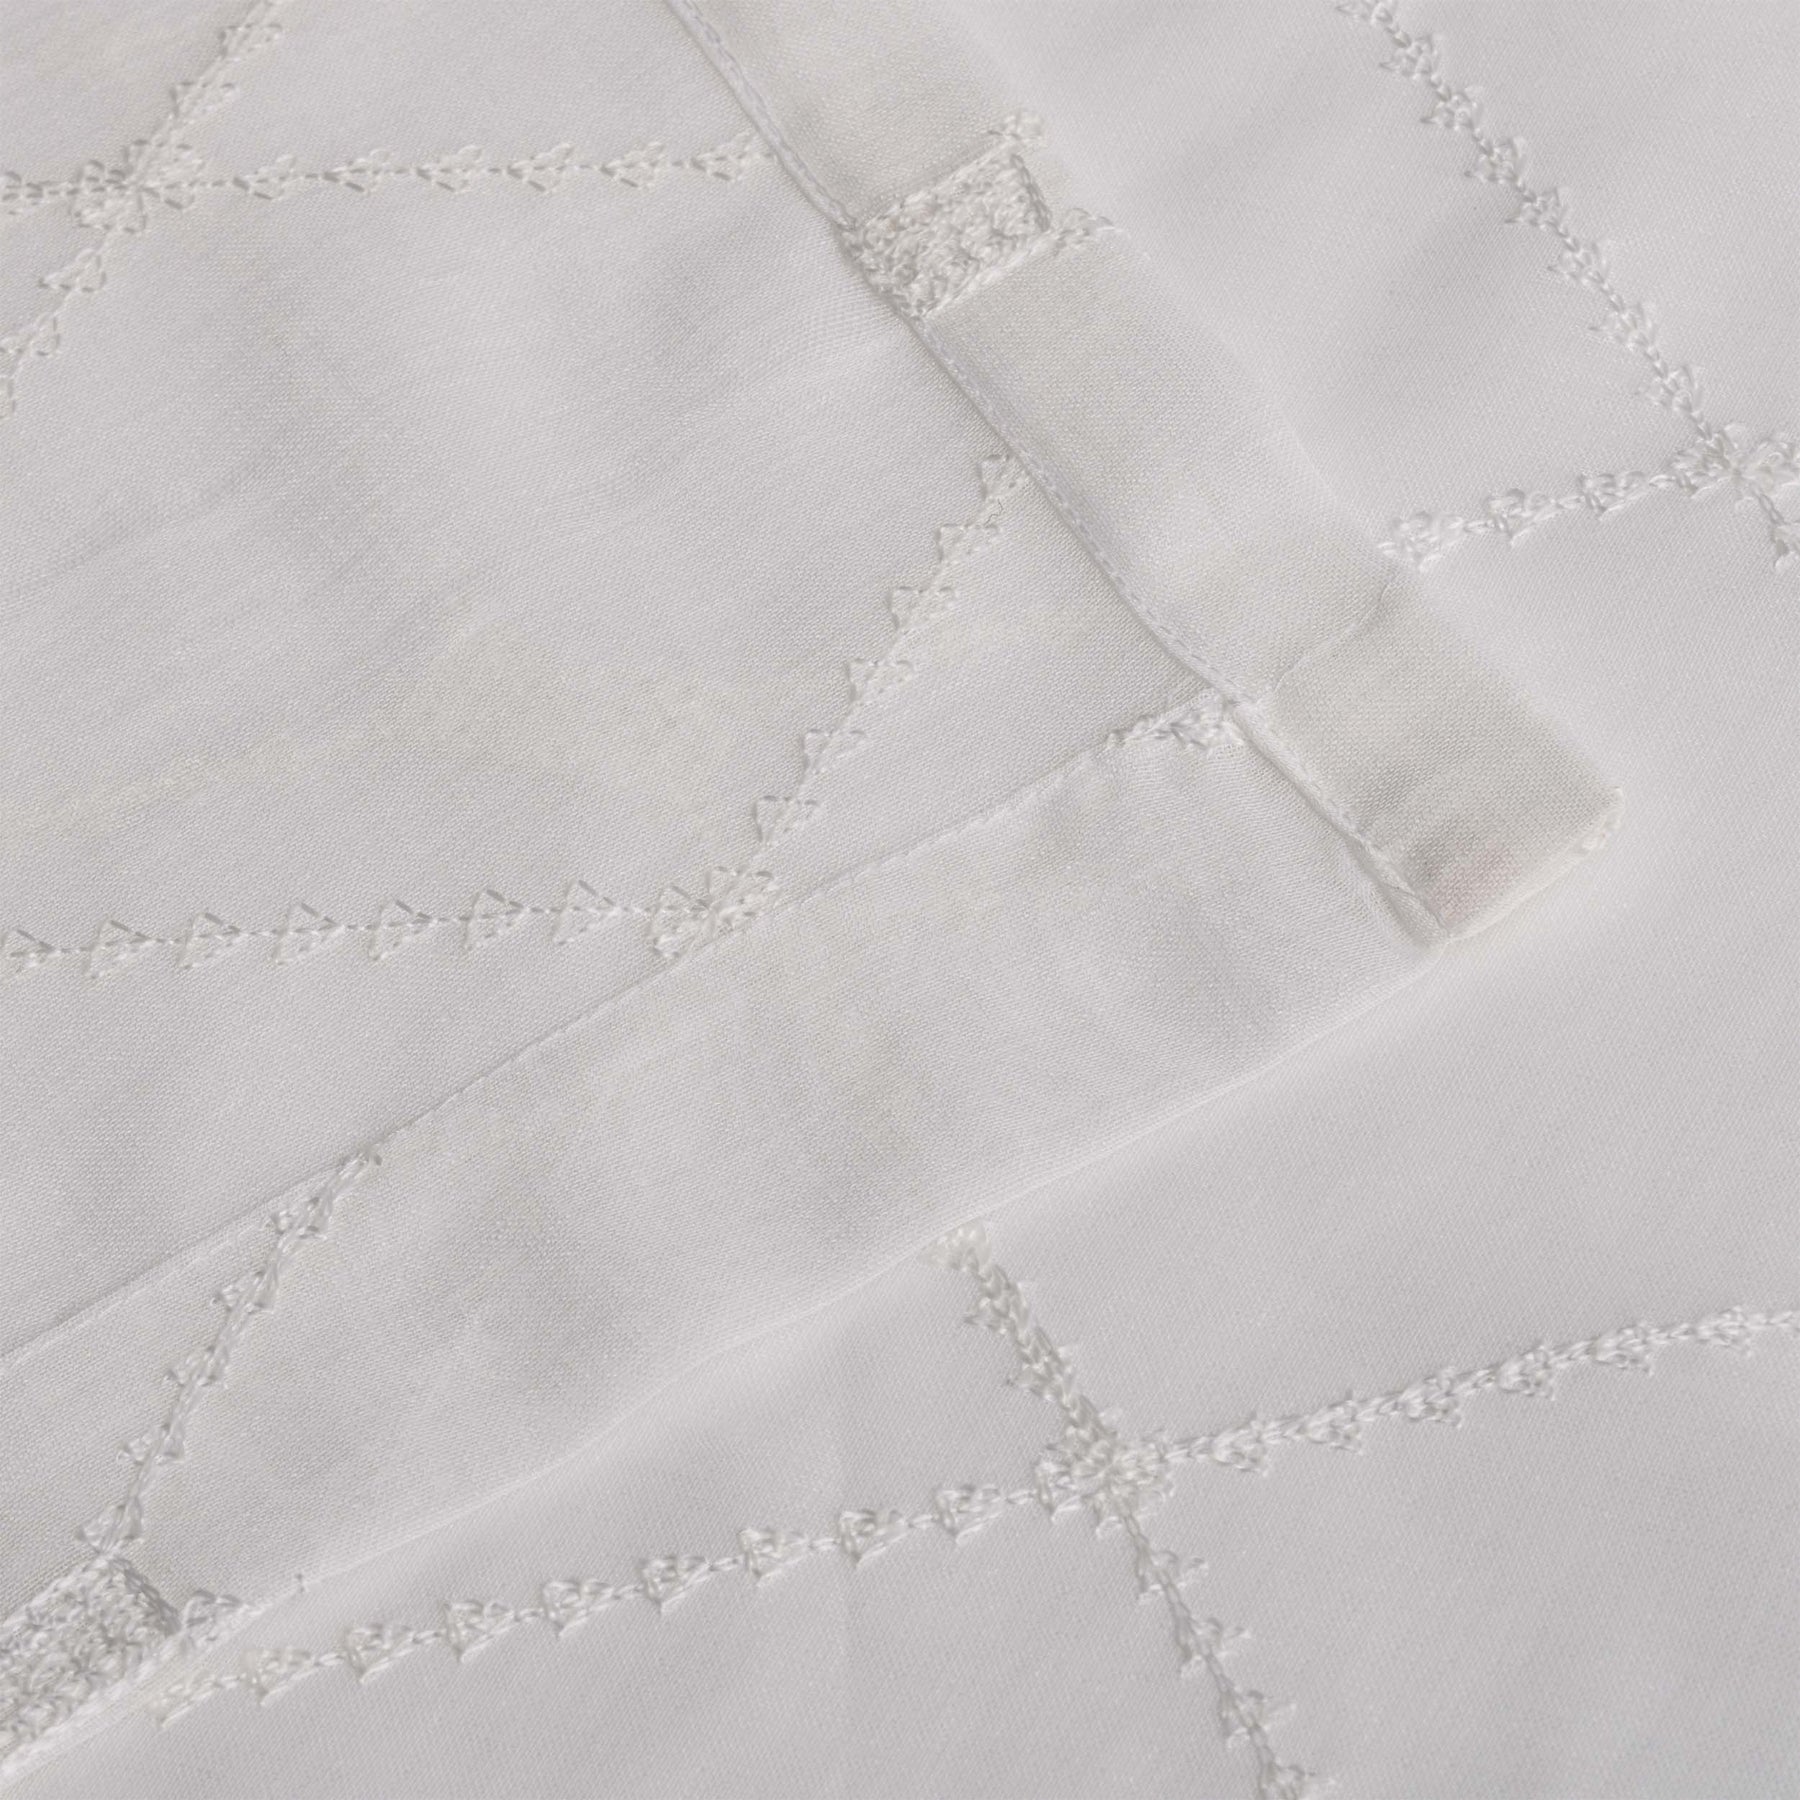 Sheer Modern Diamond Lattice Grommet Curtain Panels Set of 2 - White